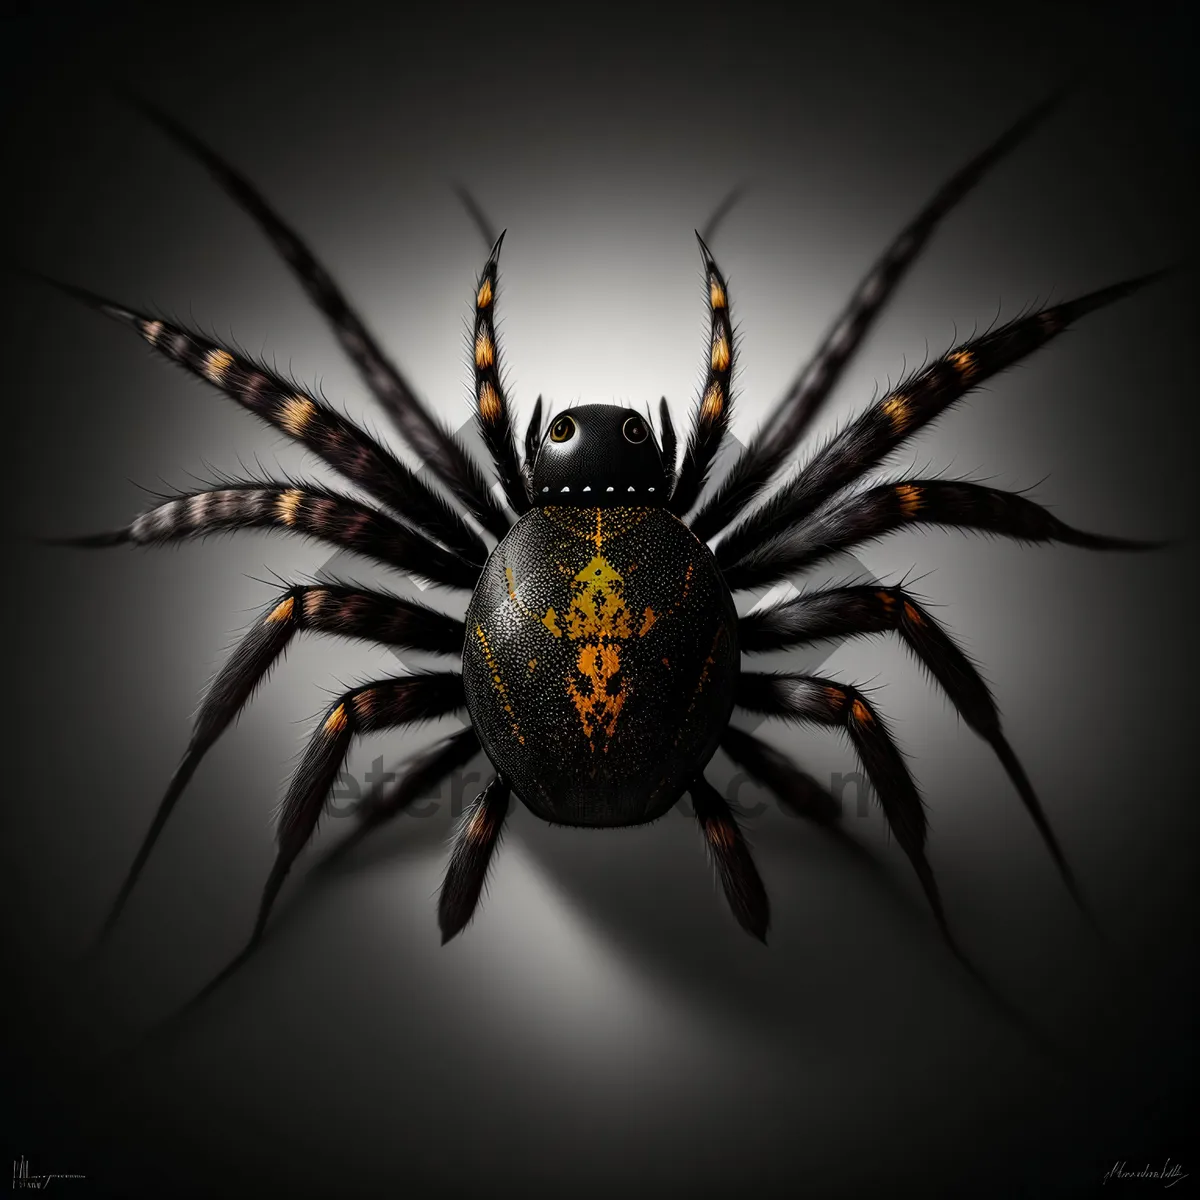 Picture of Arachnid-inspired Black Chandelier Lighting Fixture.